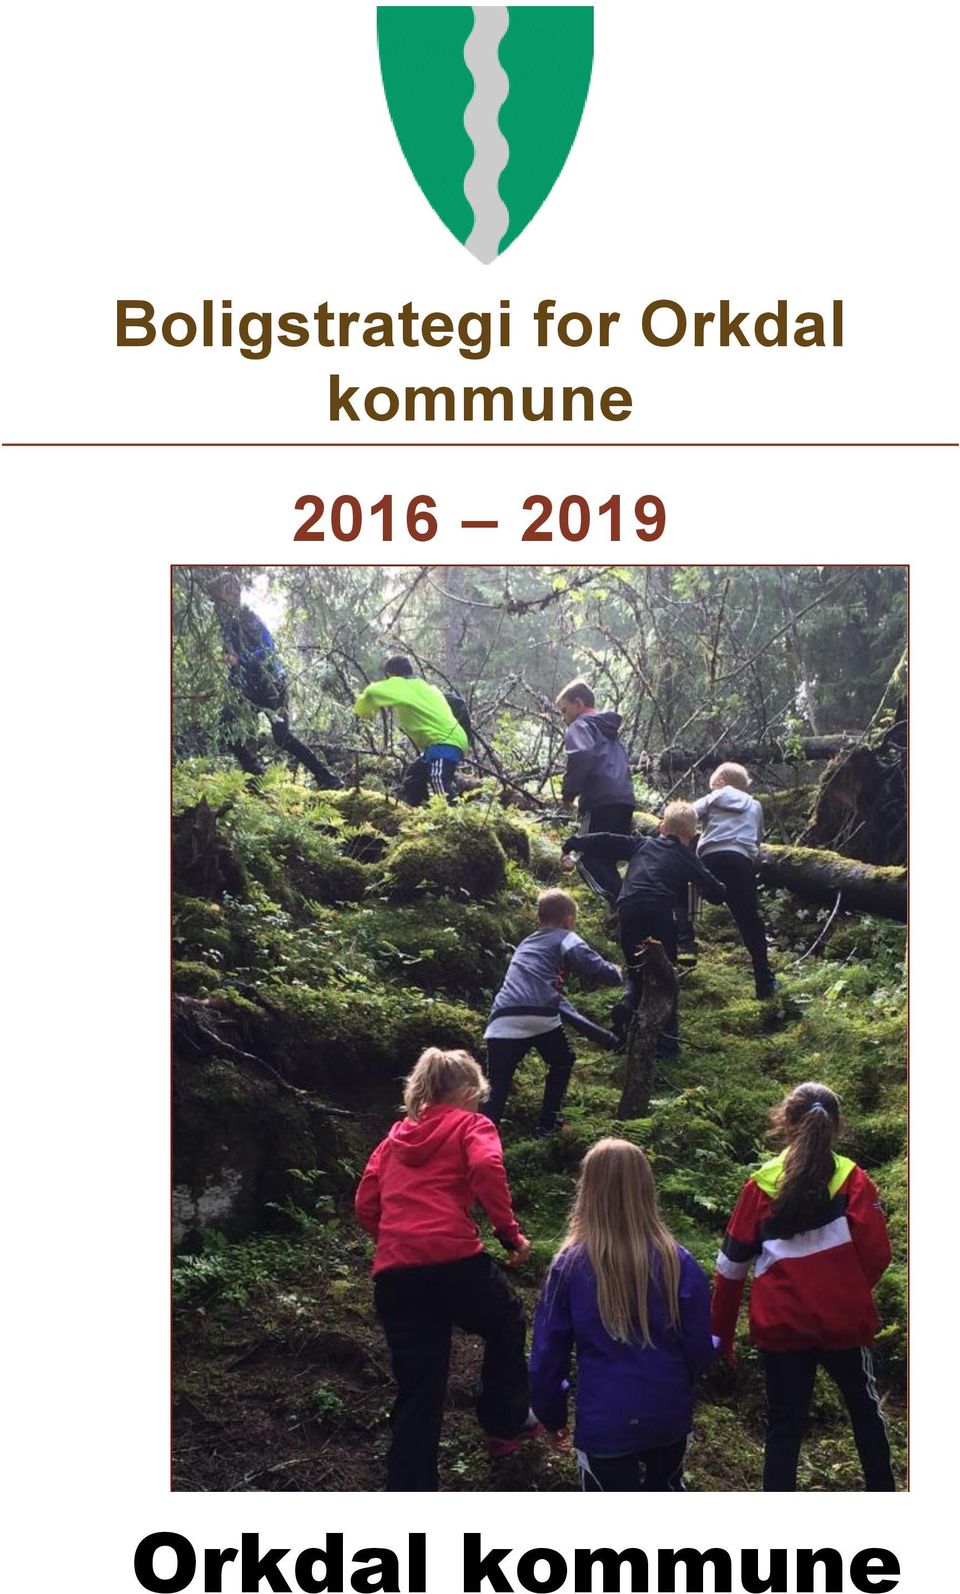 2019 Orkdal kommune